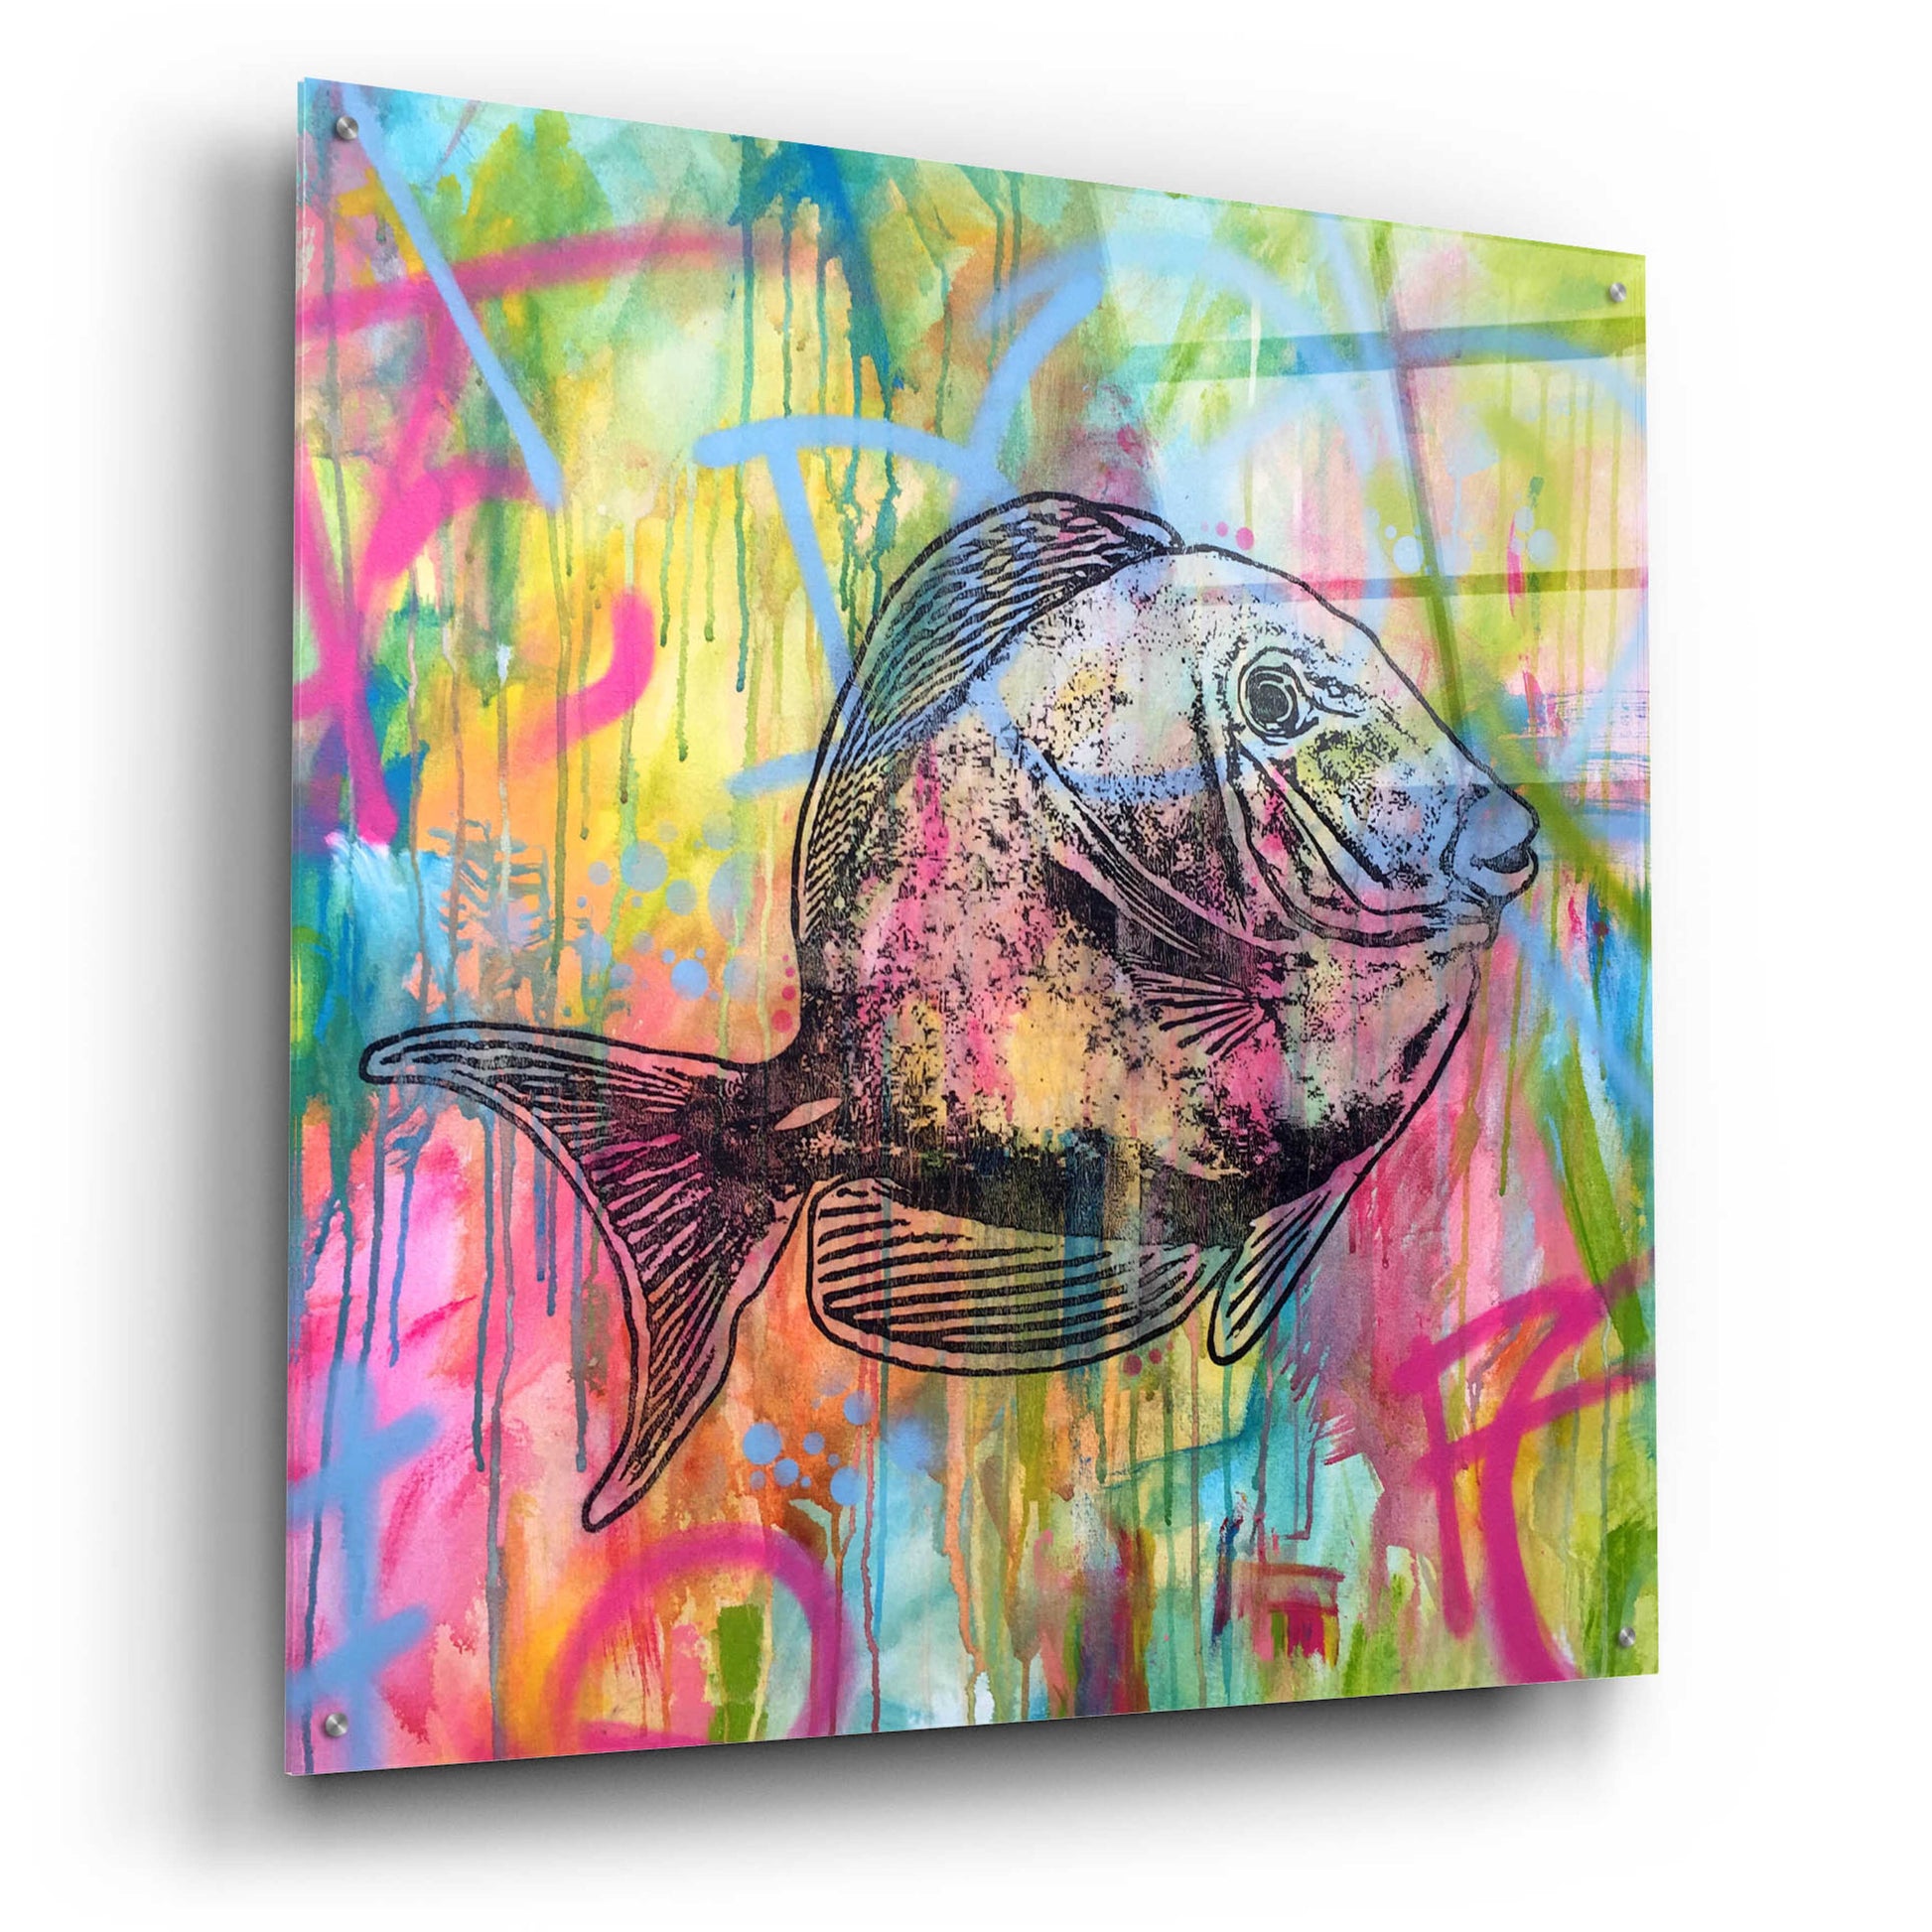 Epic Art 'Fishy Spray' by Dean Russo, Acrylic Glass Wall Art,36x36